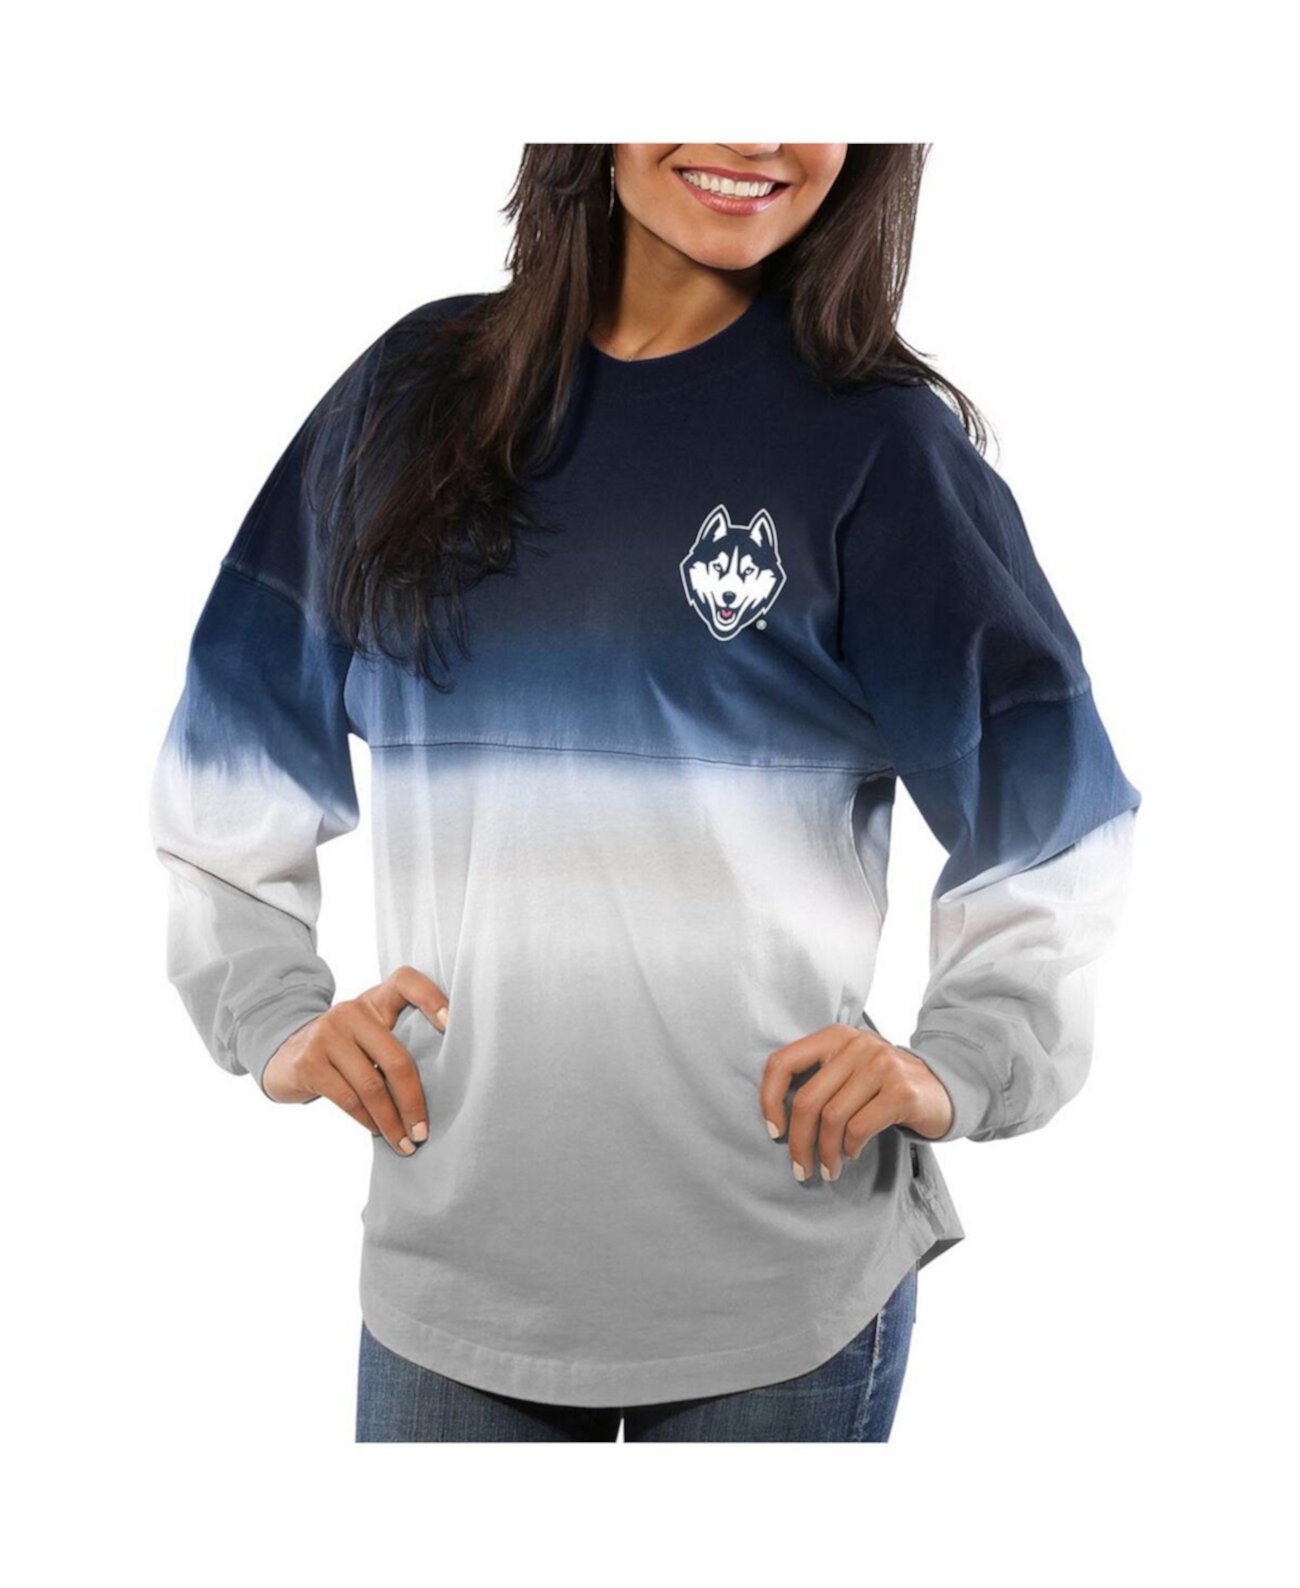 Женский темно-синий джерси UConn Huskies с длинными рукавами и омбре, окрашенный погружением в духи Spirit Jersey